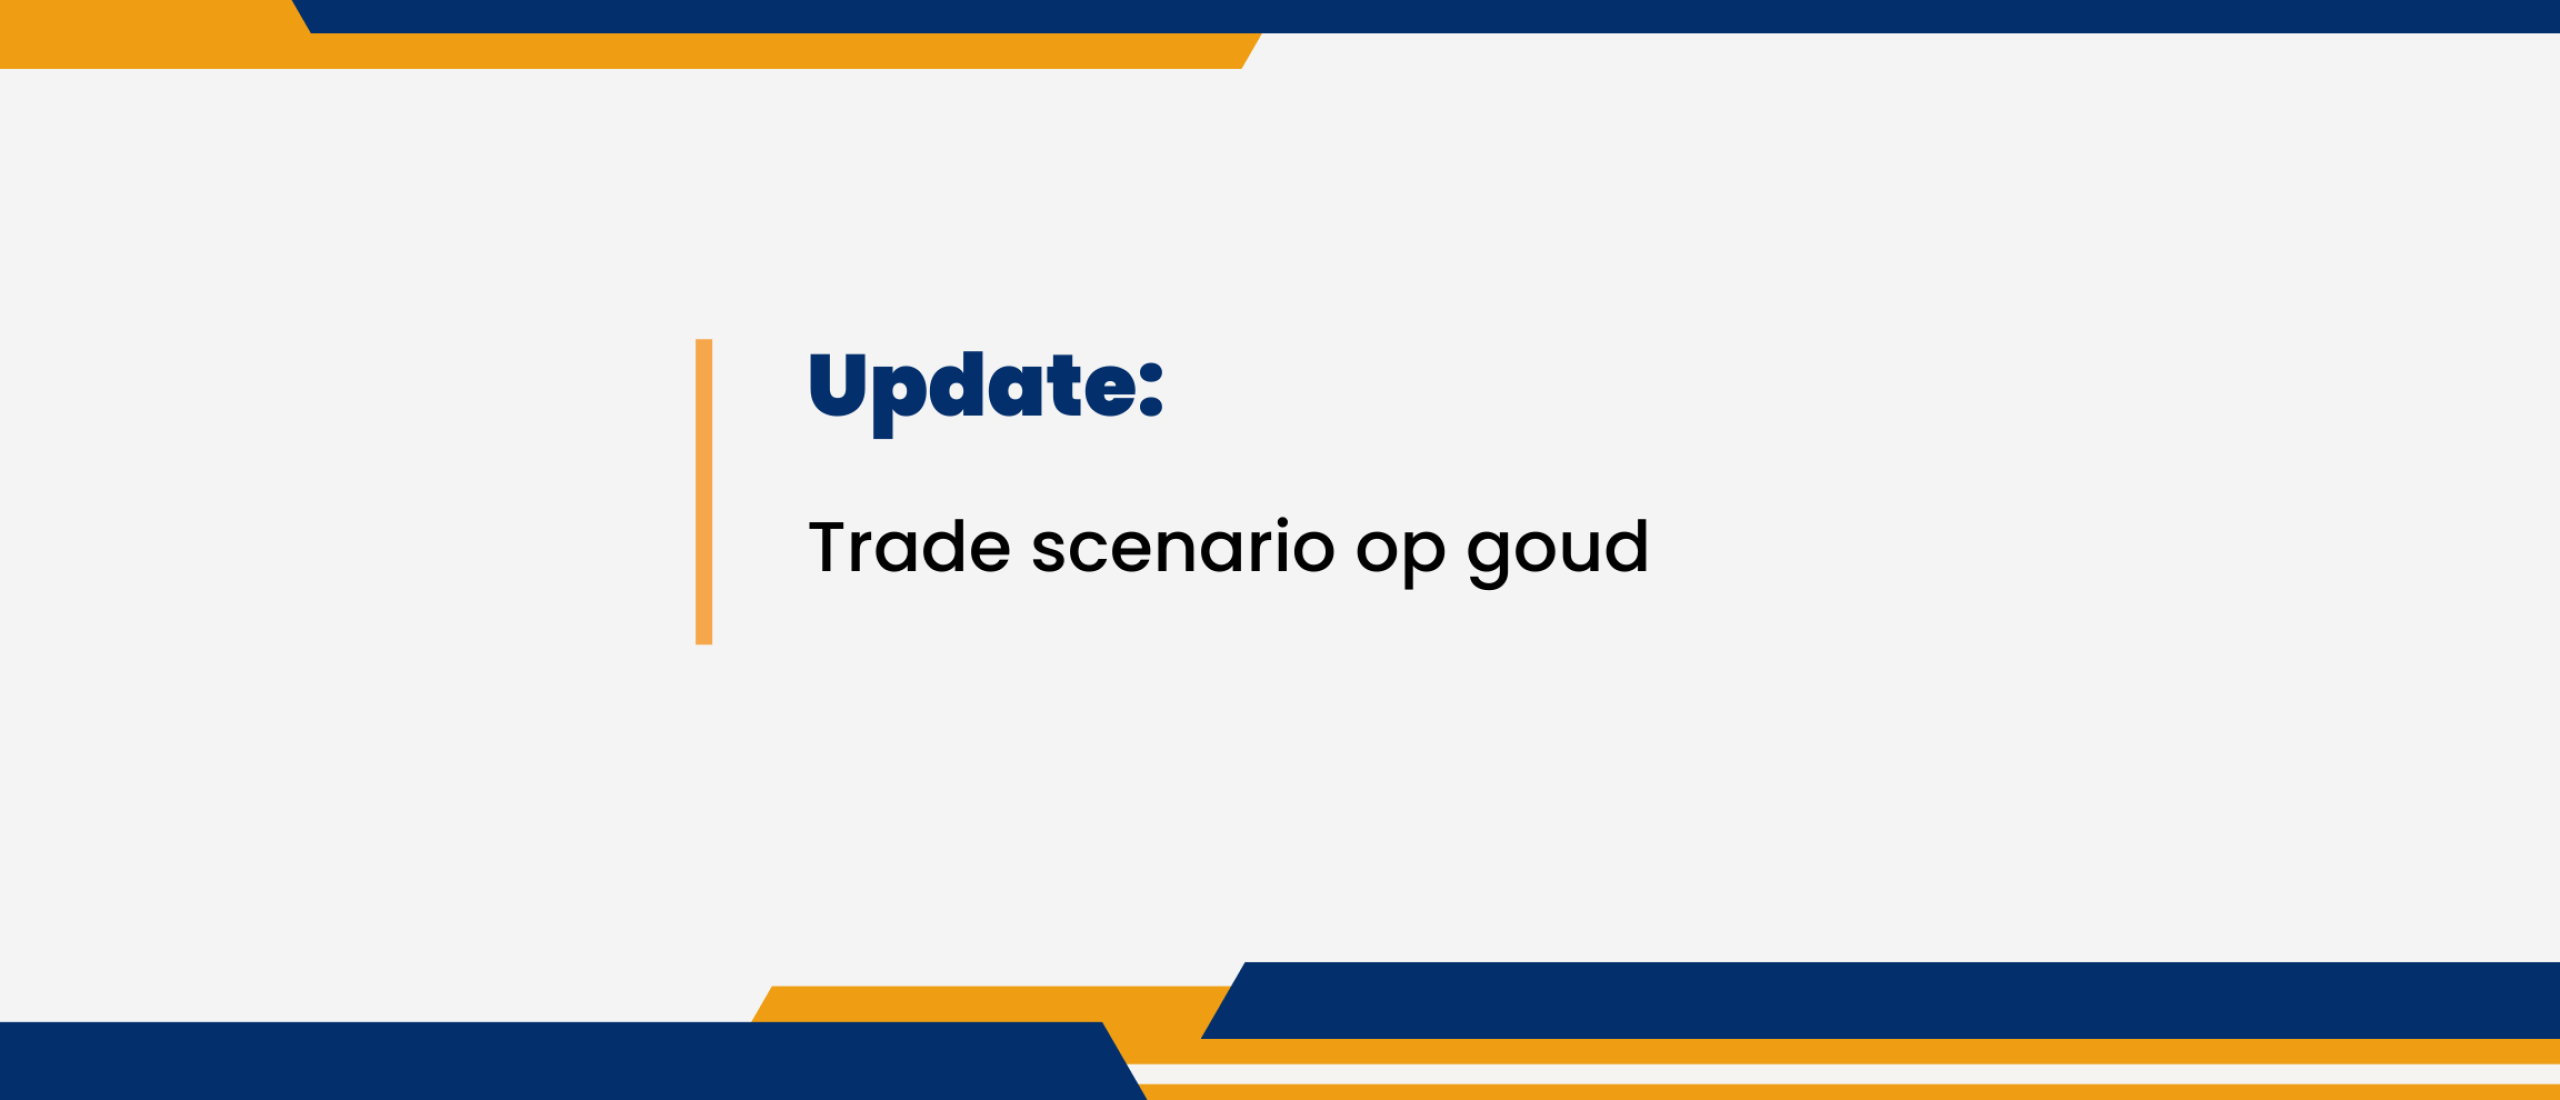 Update: Trade scenario op goud